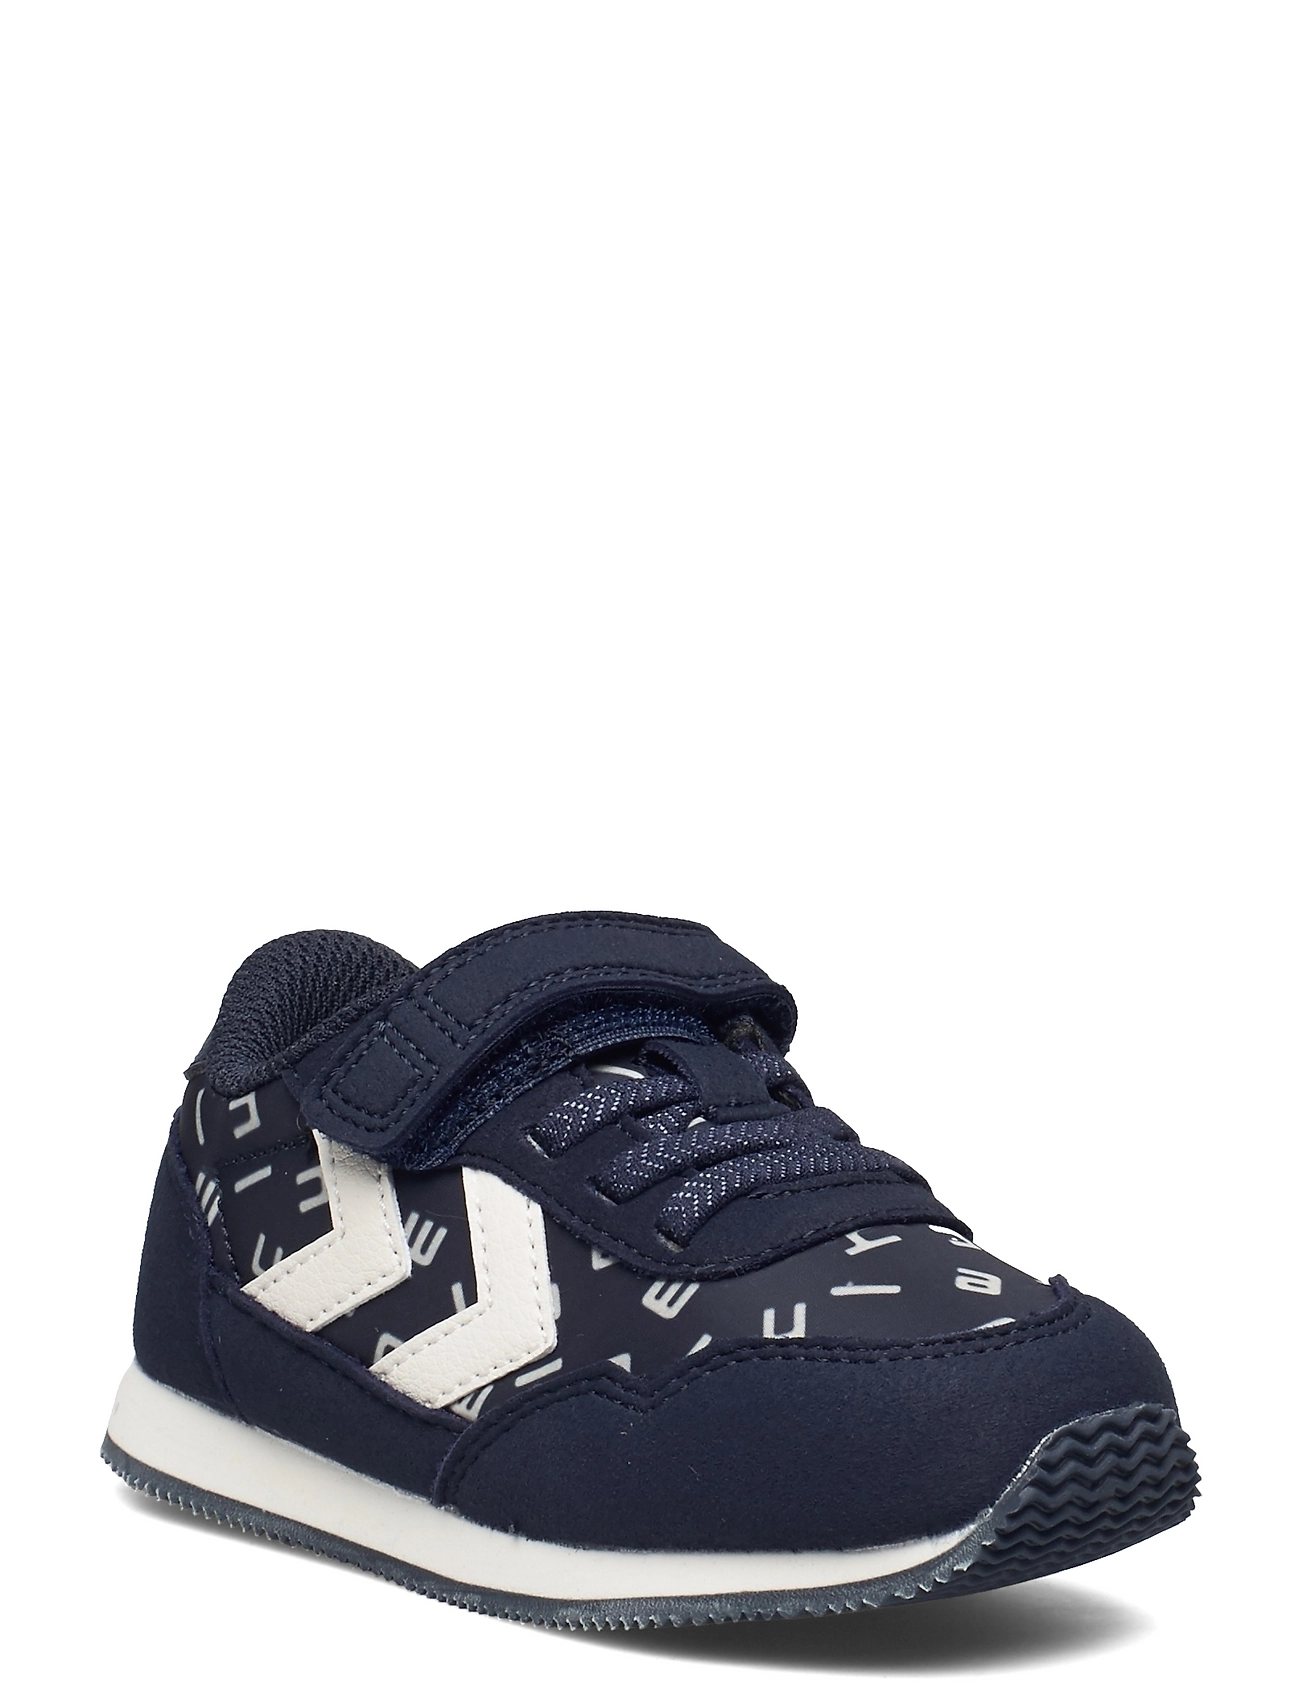 Reflex Infant Sport Sneakers Low-top Sneakers Blue Hummel